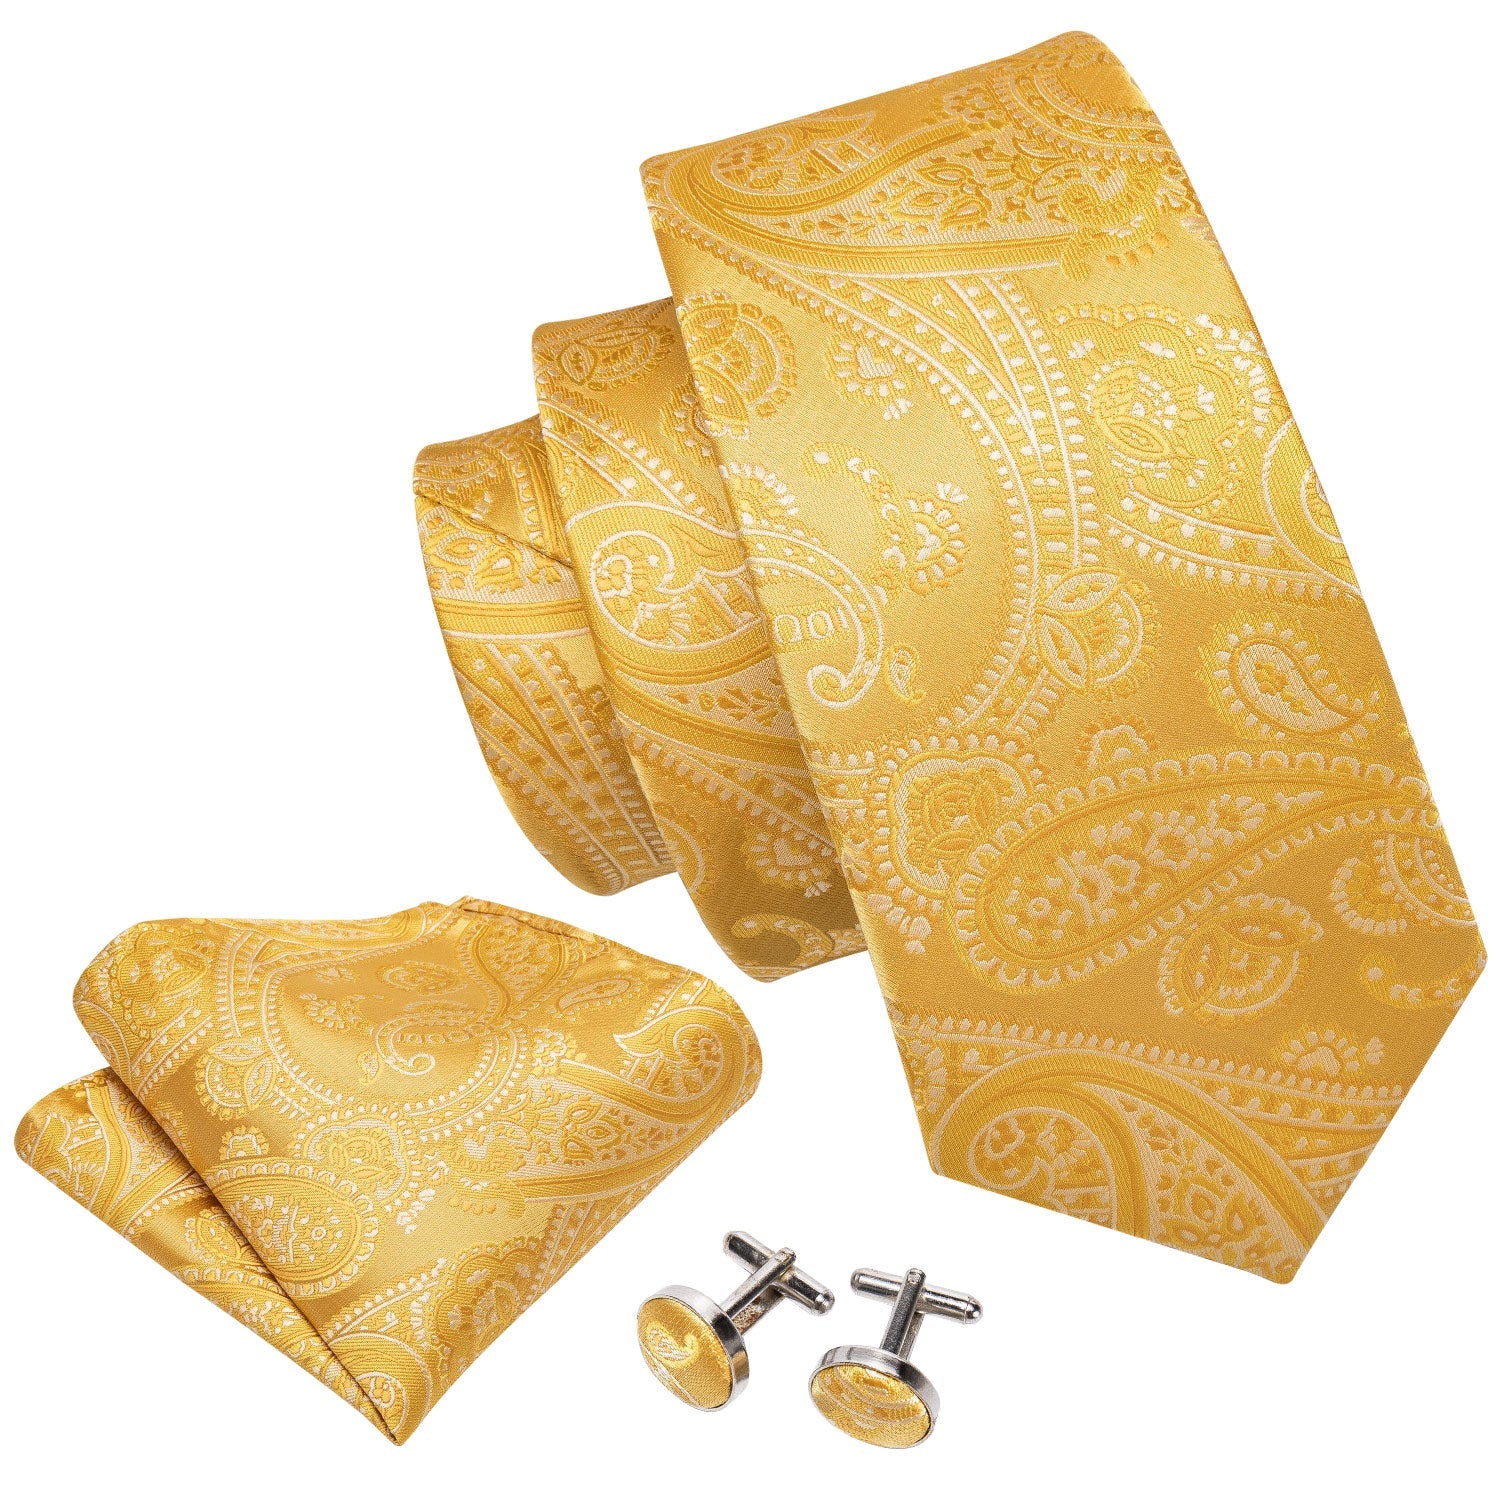 New Golden Floral Silk Men's Necktie Pocket Square Cufflinks Gift Box Set